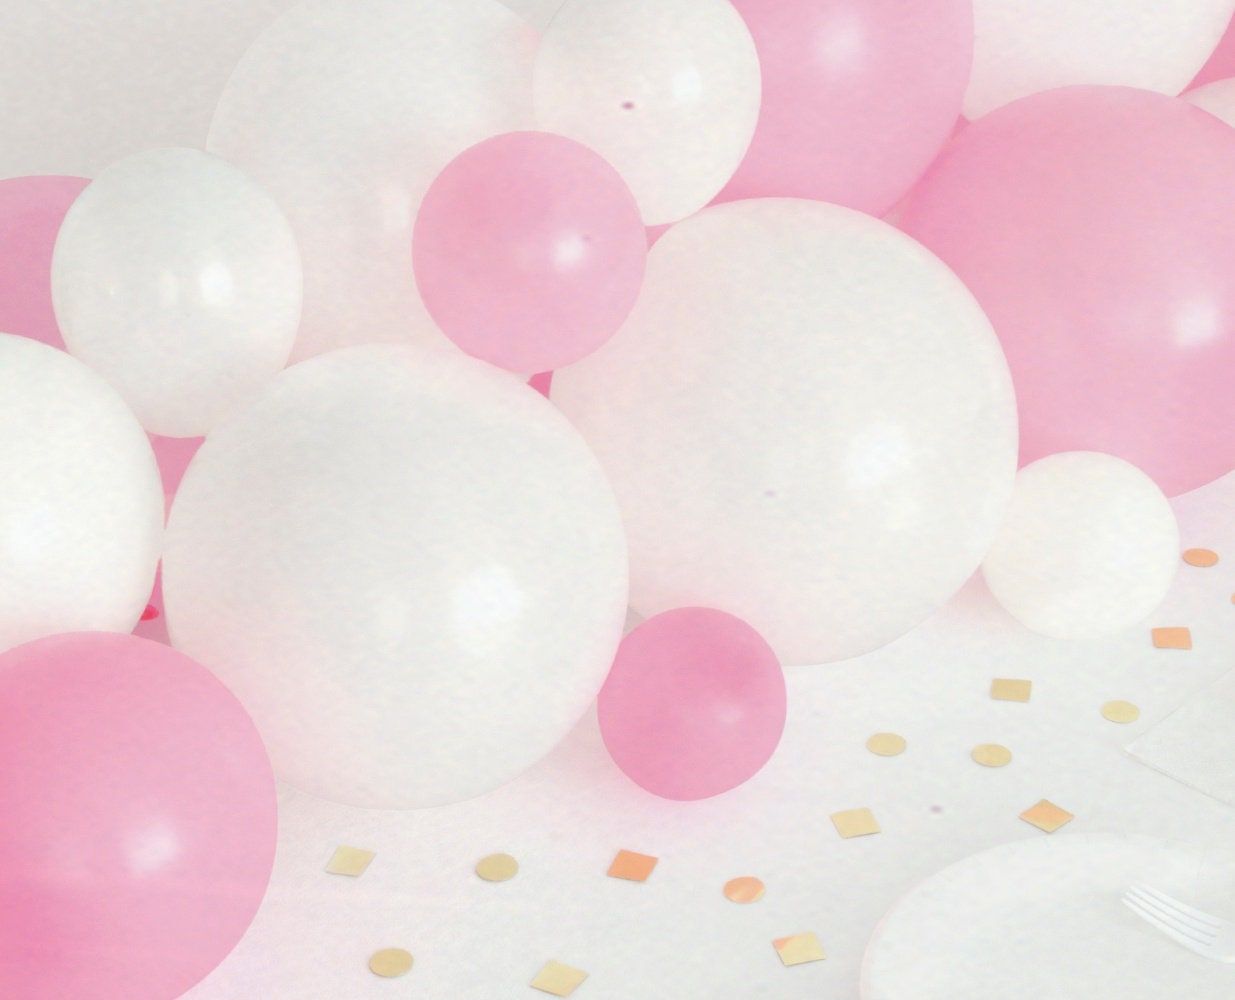  Luftballons Hintergrundbild 1235x1000. Rosa Ballon Tischläufer Ballon Girlande Kit Mädchen Baby